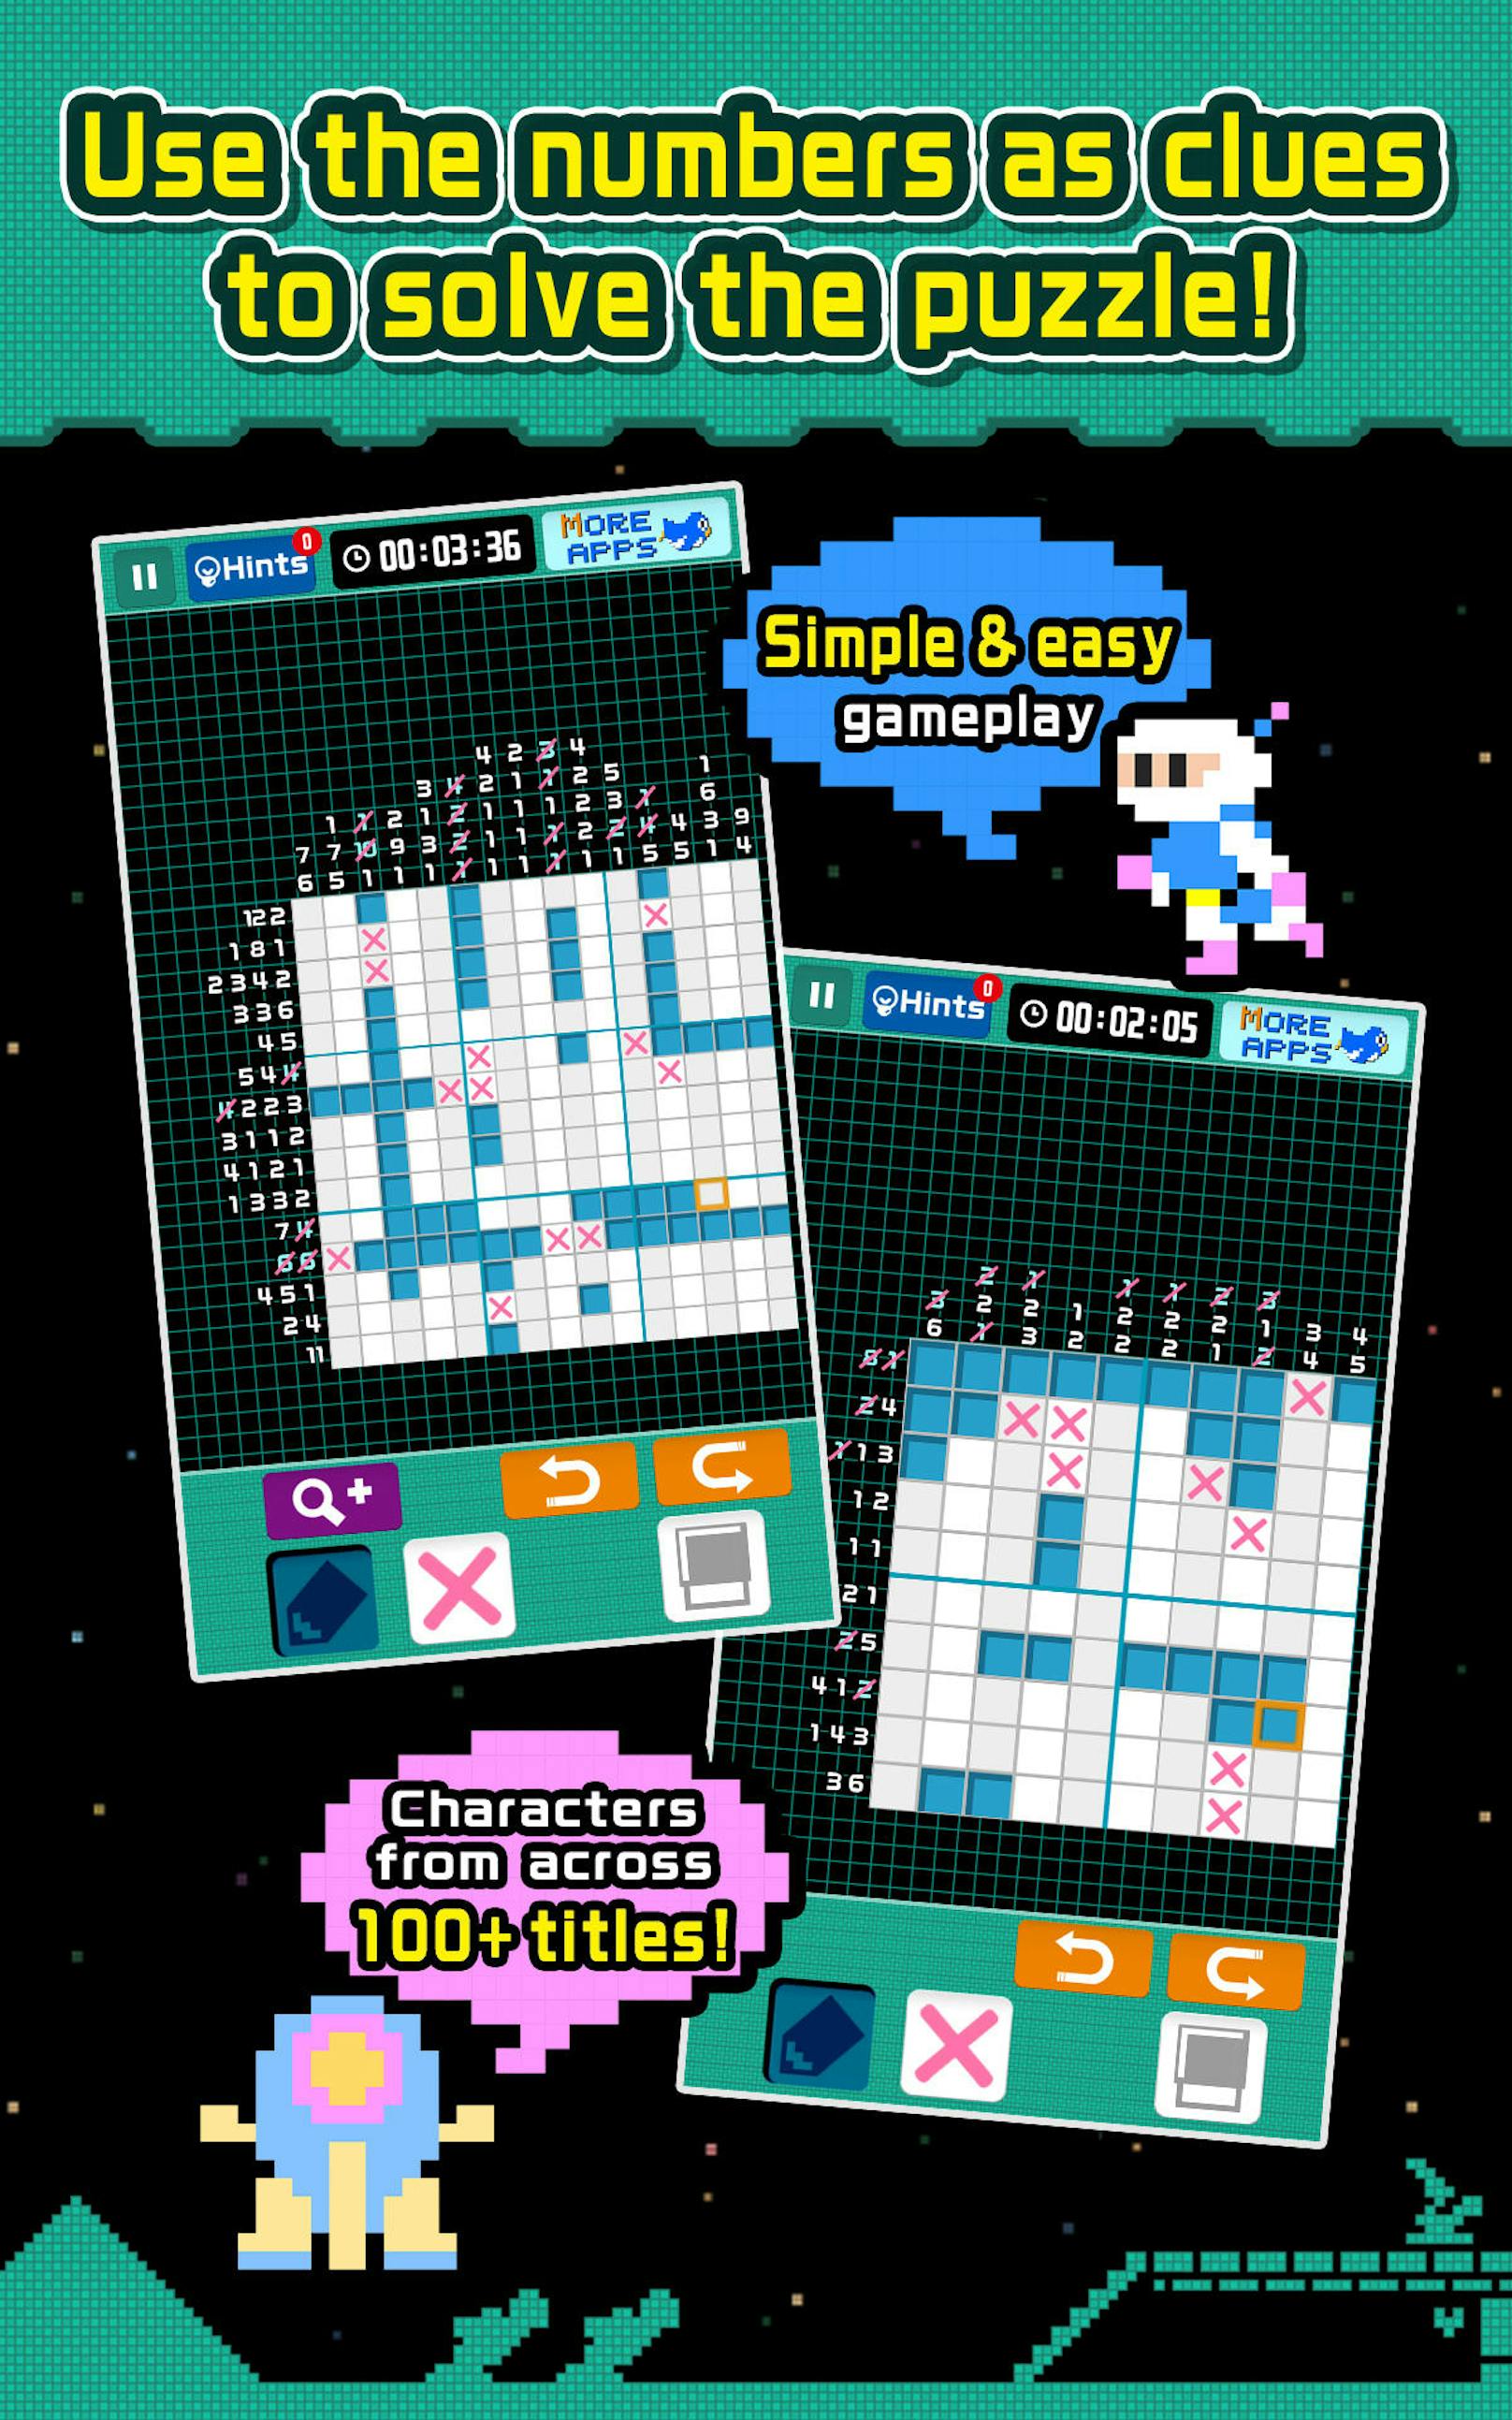 Konami gibt bekannt, dass die Pixel Puzzle Collection ab sofort in Europa für Mobilgeräte kostenfrei erhältlich ist. Pixel Puzzle Collection ist eine Sammlung von bildhaften Logikrätseln, bei denen Zahlen Hinweise darauf geben, wie die fehlenden Stellen im Raster auszufüllen sind. Zum Sammeln erhalten die Spieler nach dem erfolgreichen Lösen eines Rätsels Pixelart-Bilder von bekannten Charakteren aus über 100 Spielen wie Frogger, Contra, Bomberman oder Castlevania. Beim Rätseln können sowohl Anfänger als auch erfahrene Rätsel-Veteranen nostalgischer Musik lauschen. Pixel Puzzle Collection kann ab sofort kostenfrei im App Store und bei Google Play heruntergeladen werden.